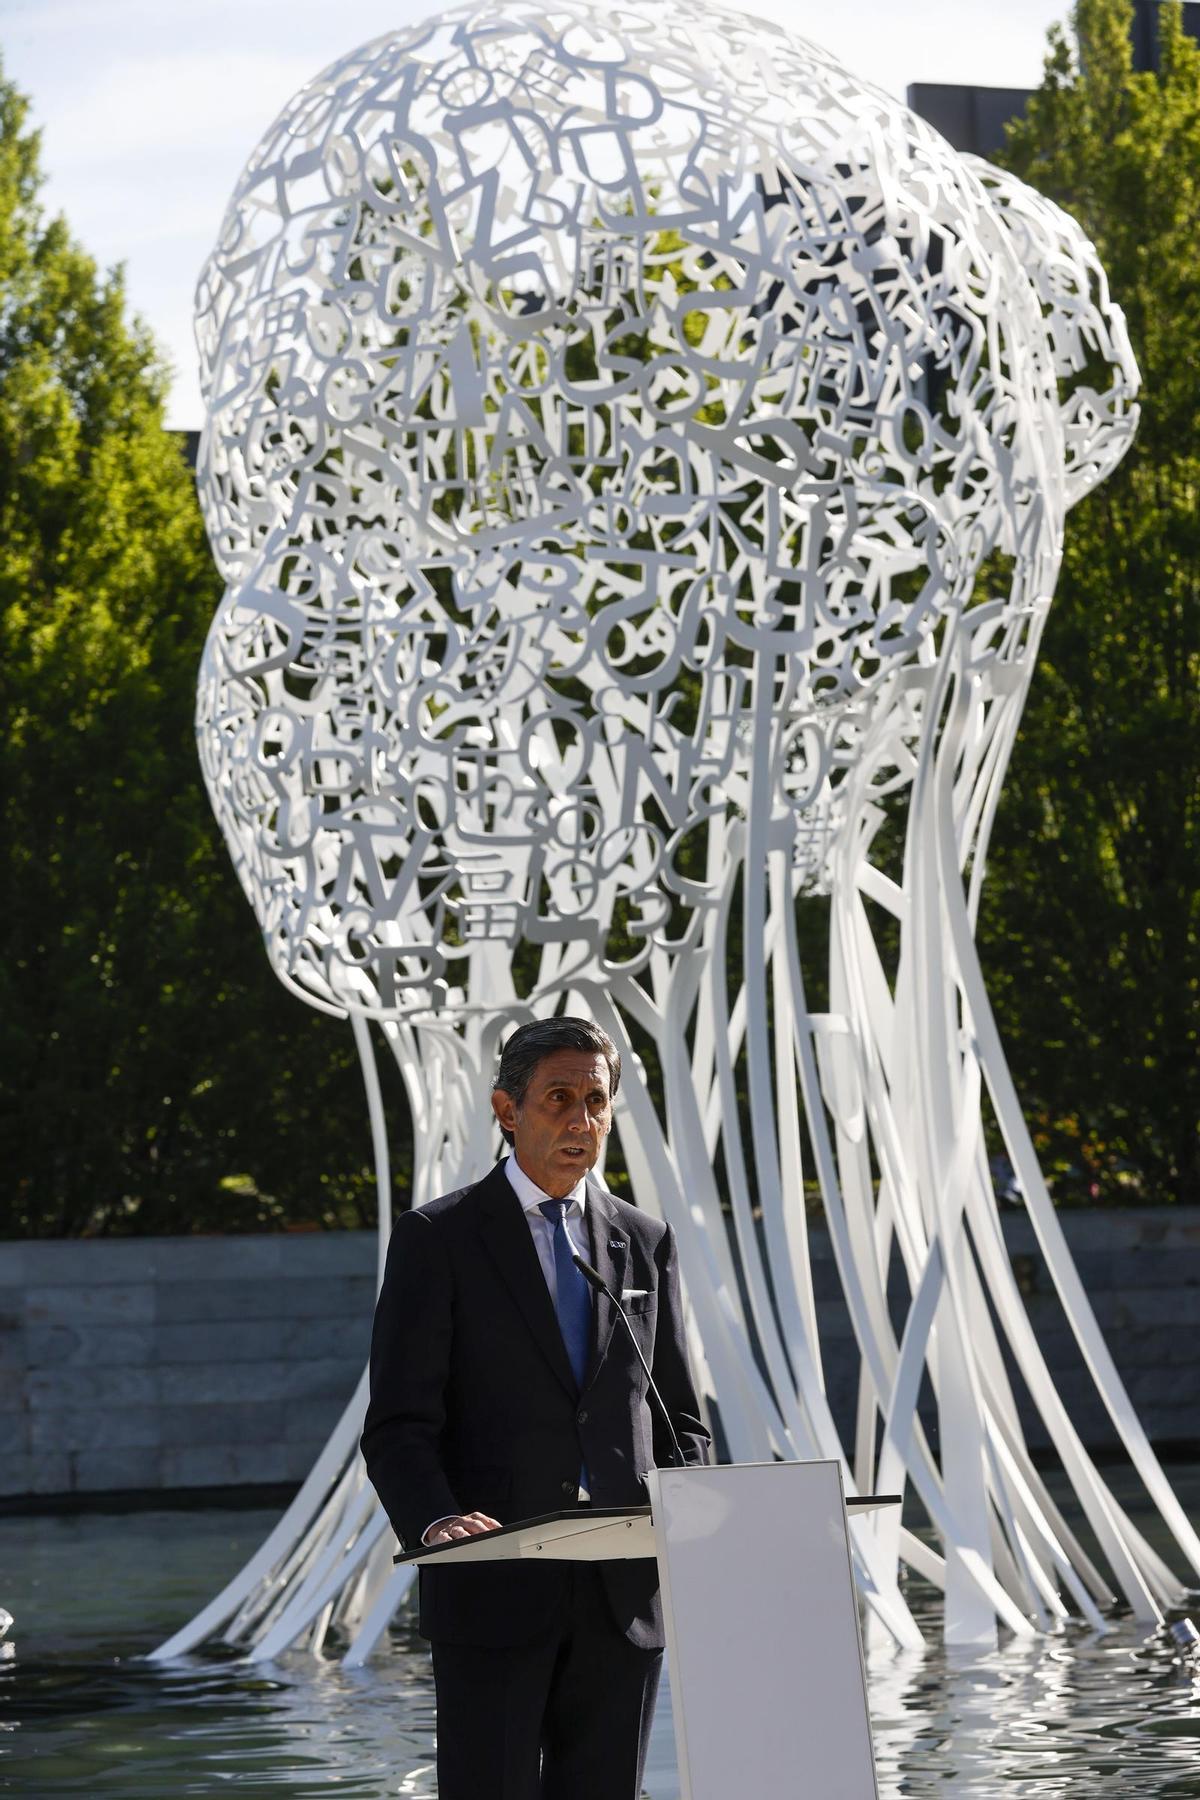 Nueva escultura del artista Jaume Plensa en Madrid